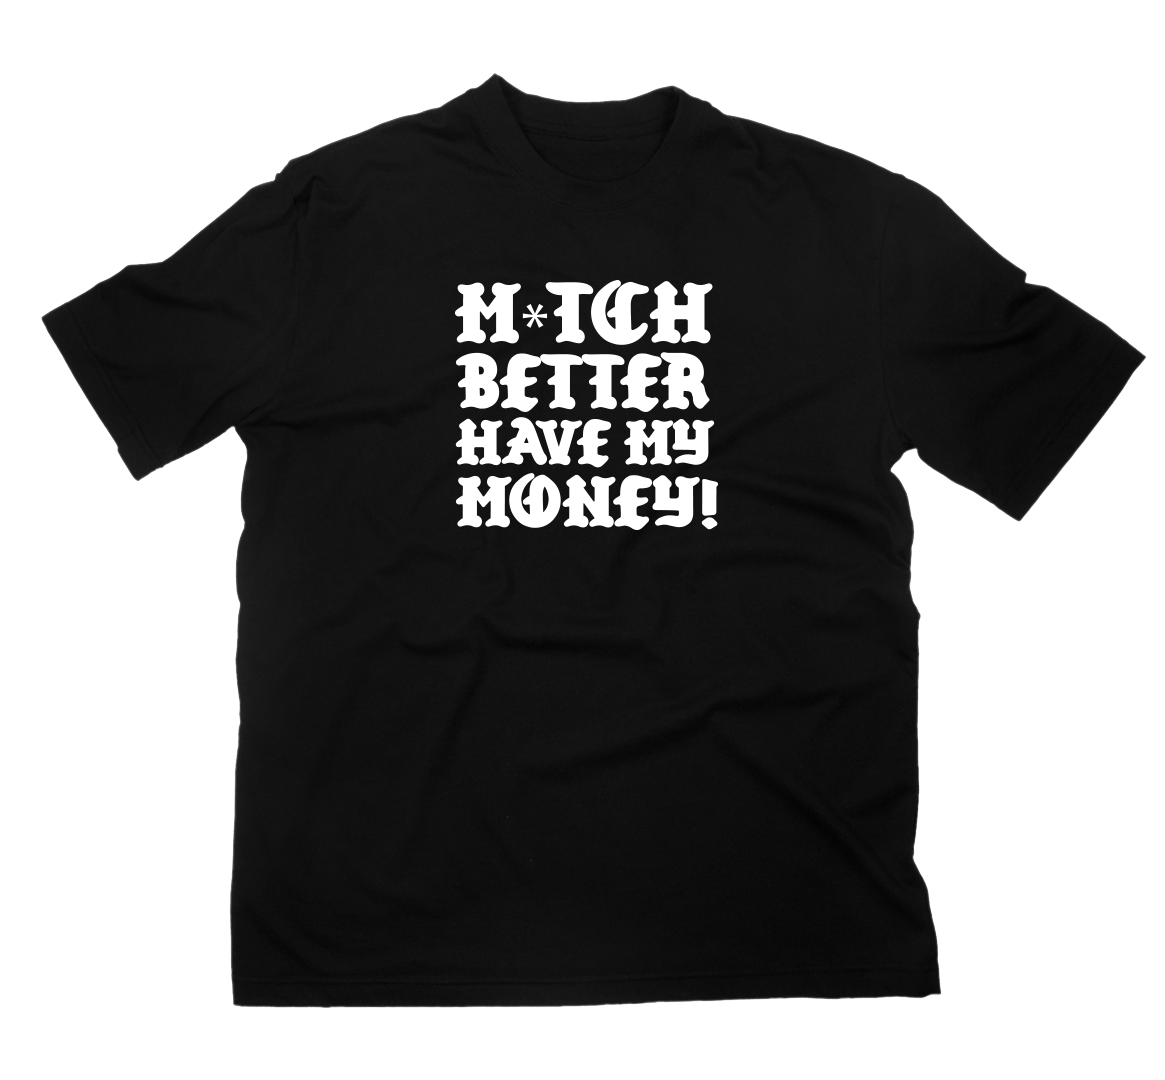 Mitch Better T-Shirt